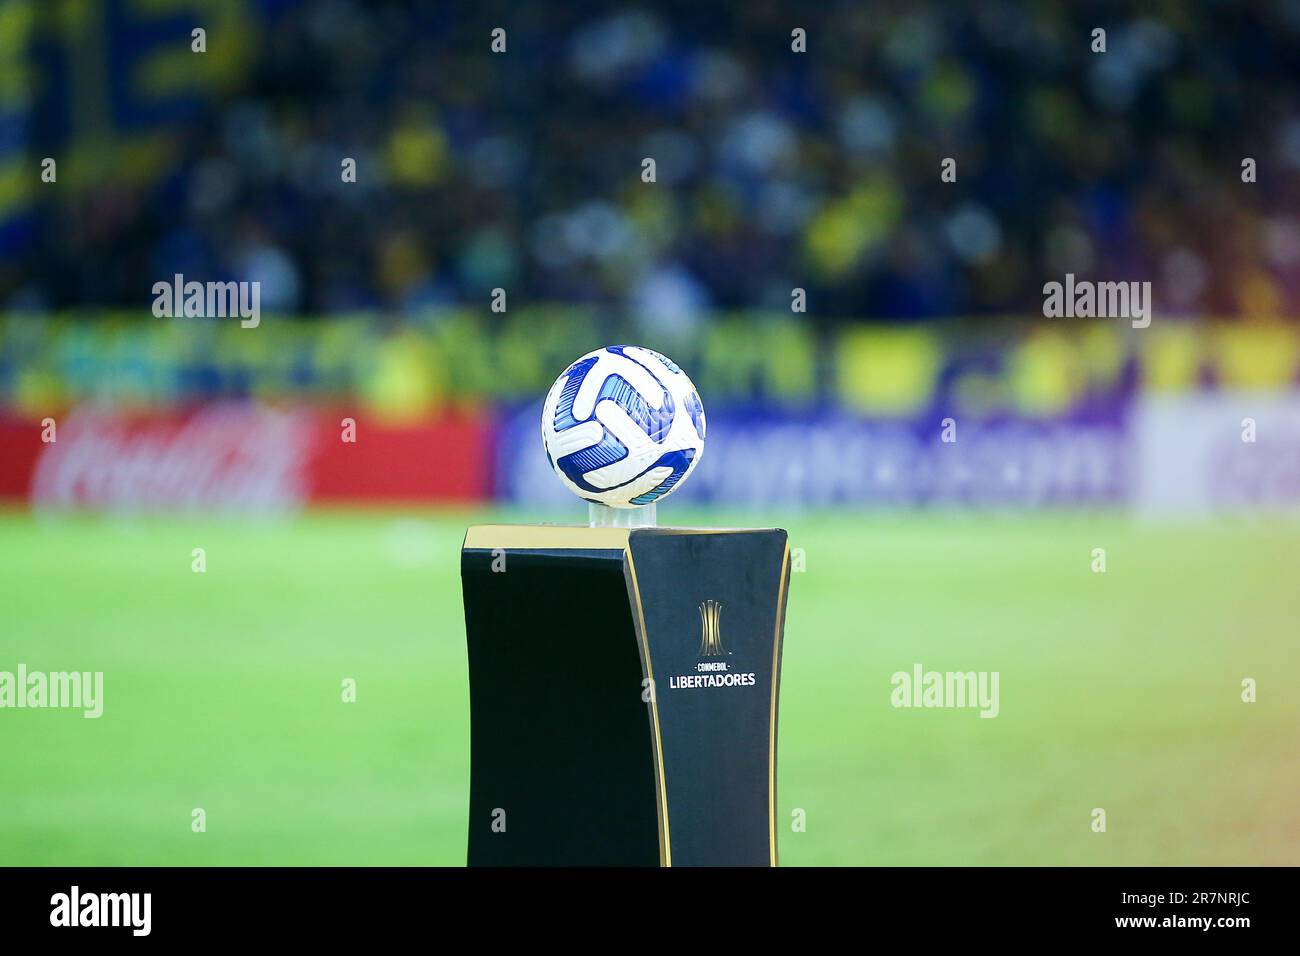 Balón oficial (Pelota) copa Libertadores Stock Photo